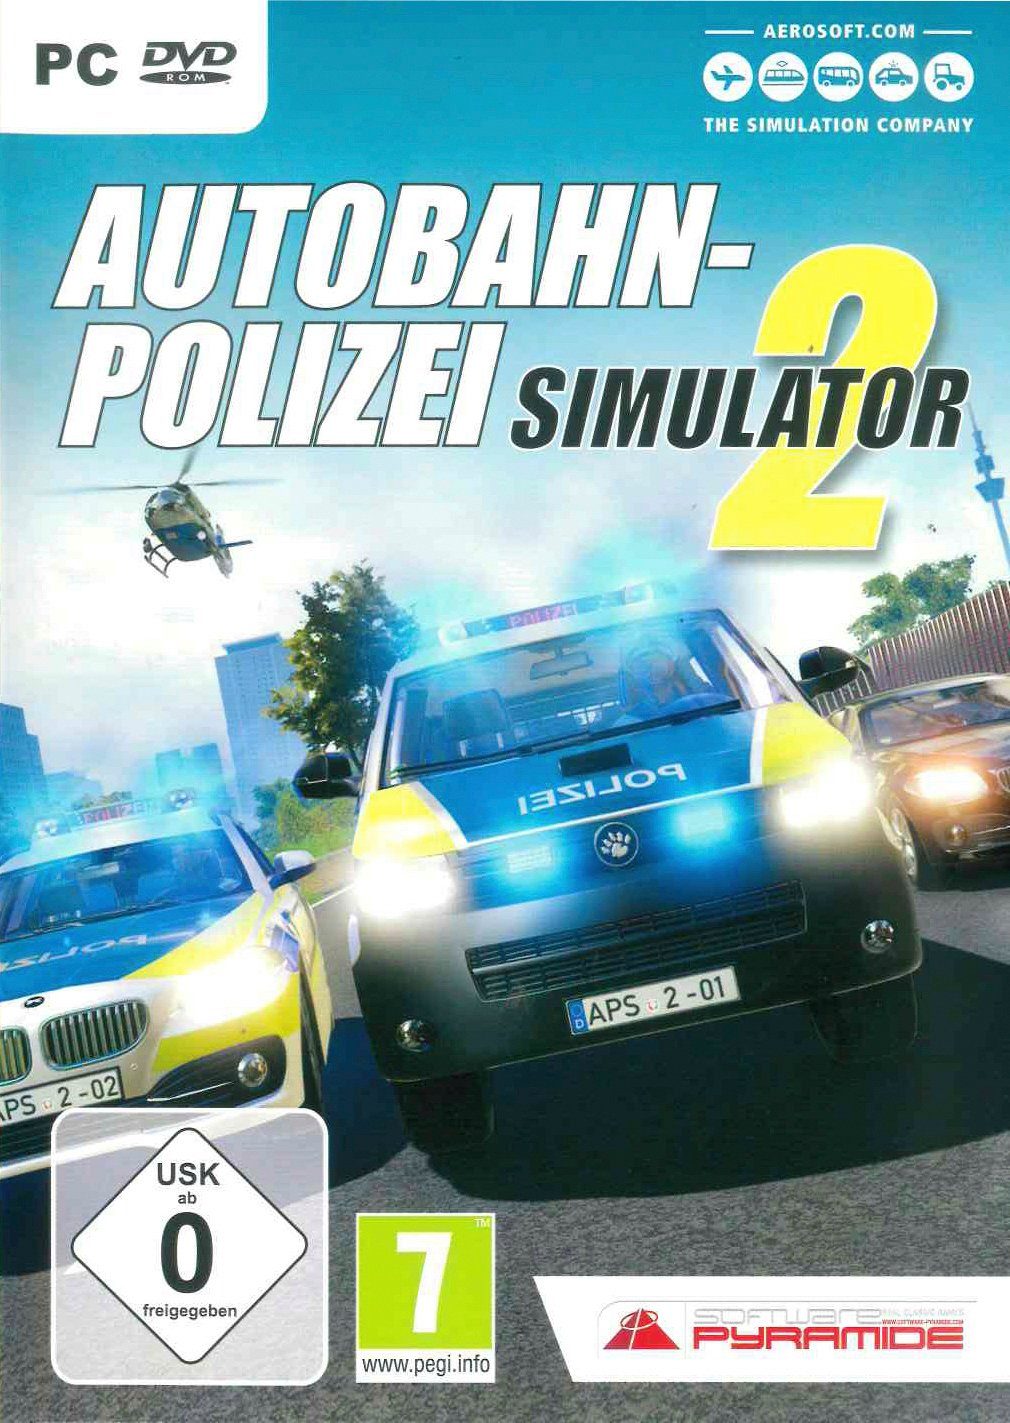 Die Qualität ist Simulator Autobahn-Polizei PC 2